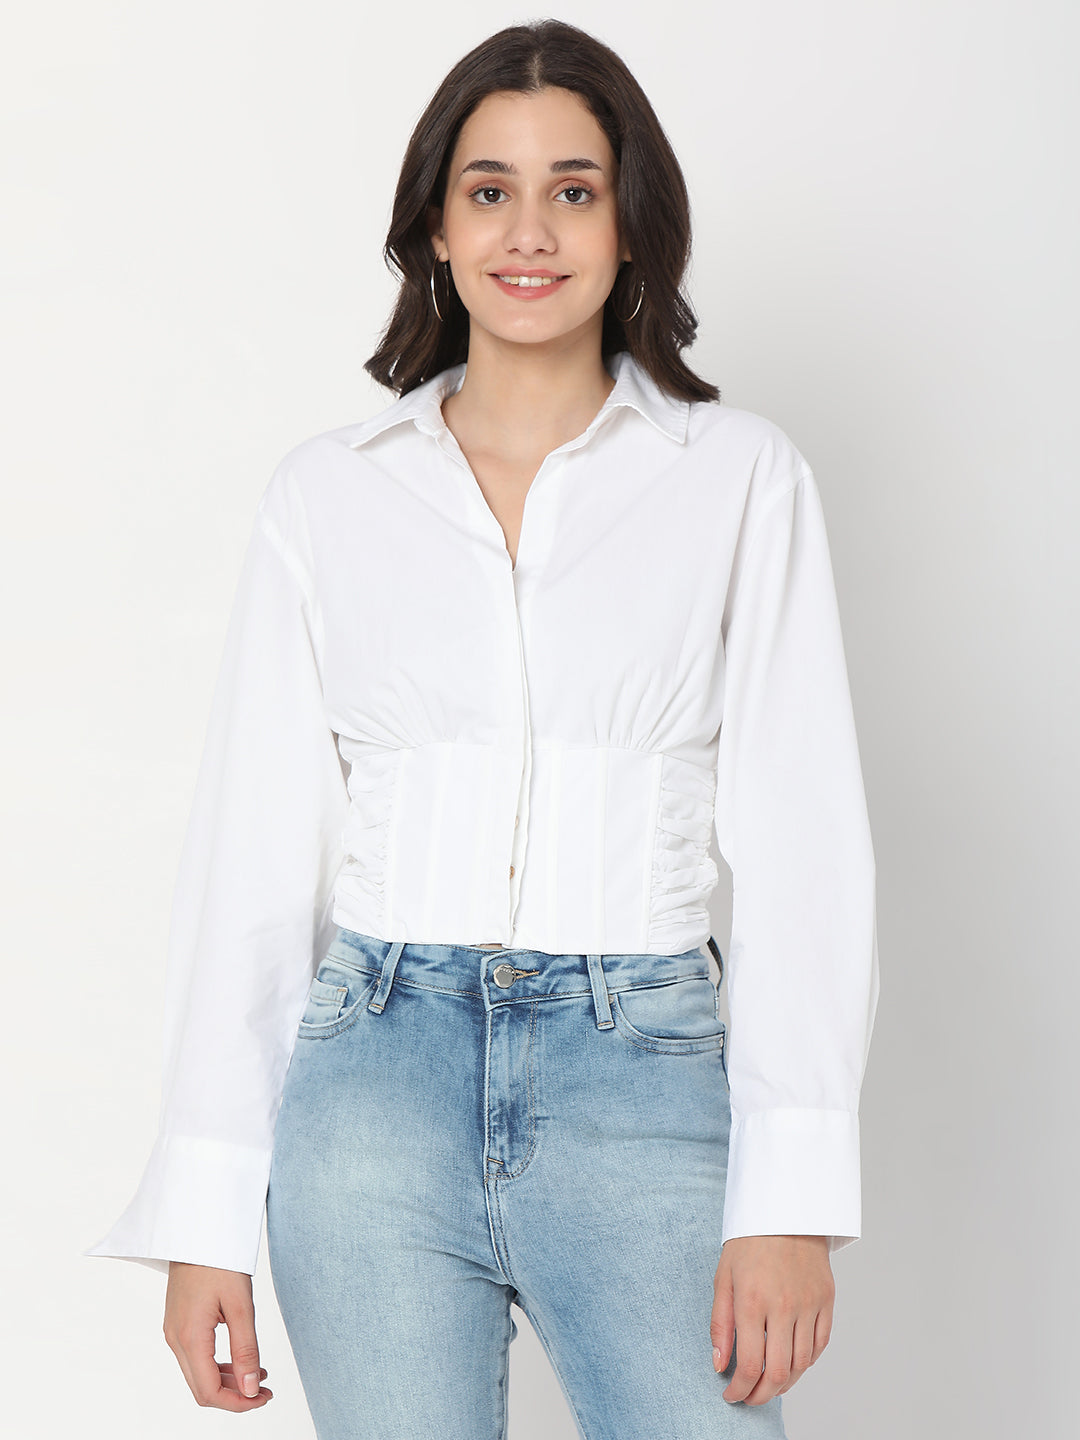 Spykar White Cotton Full Sleeve Plain Shirts For Women